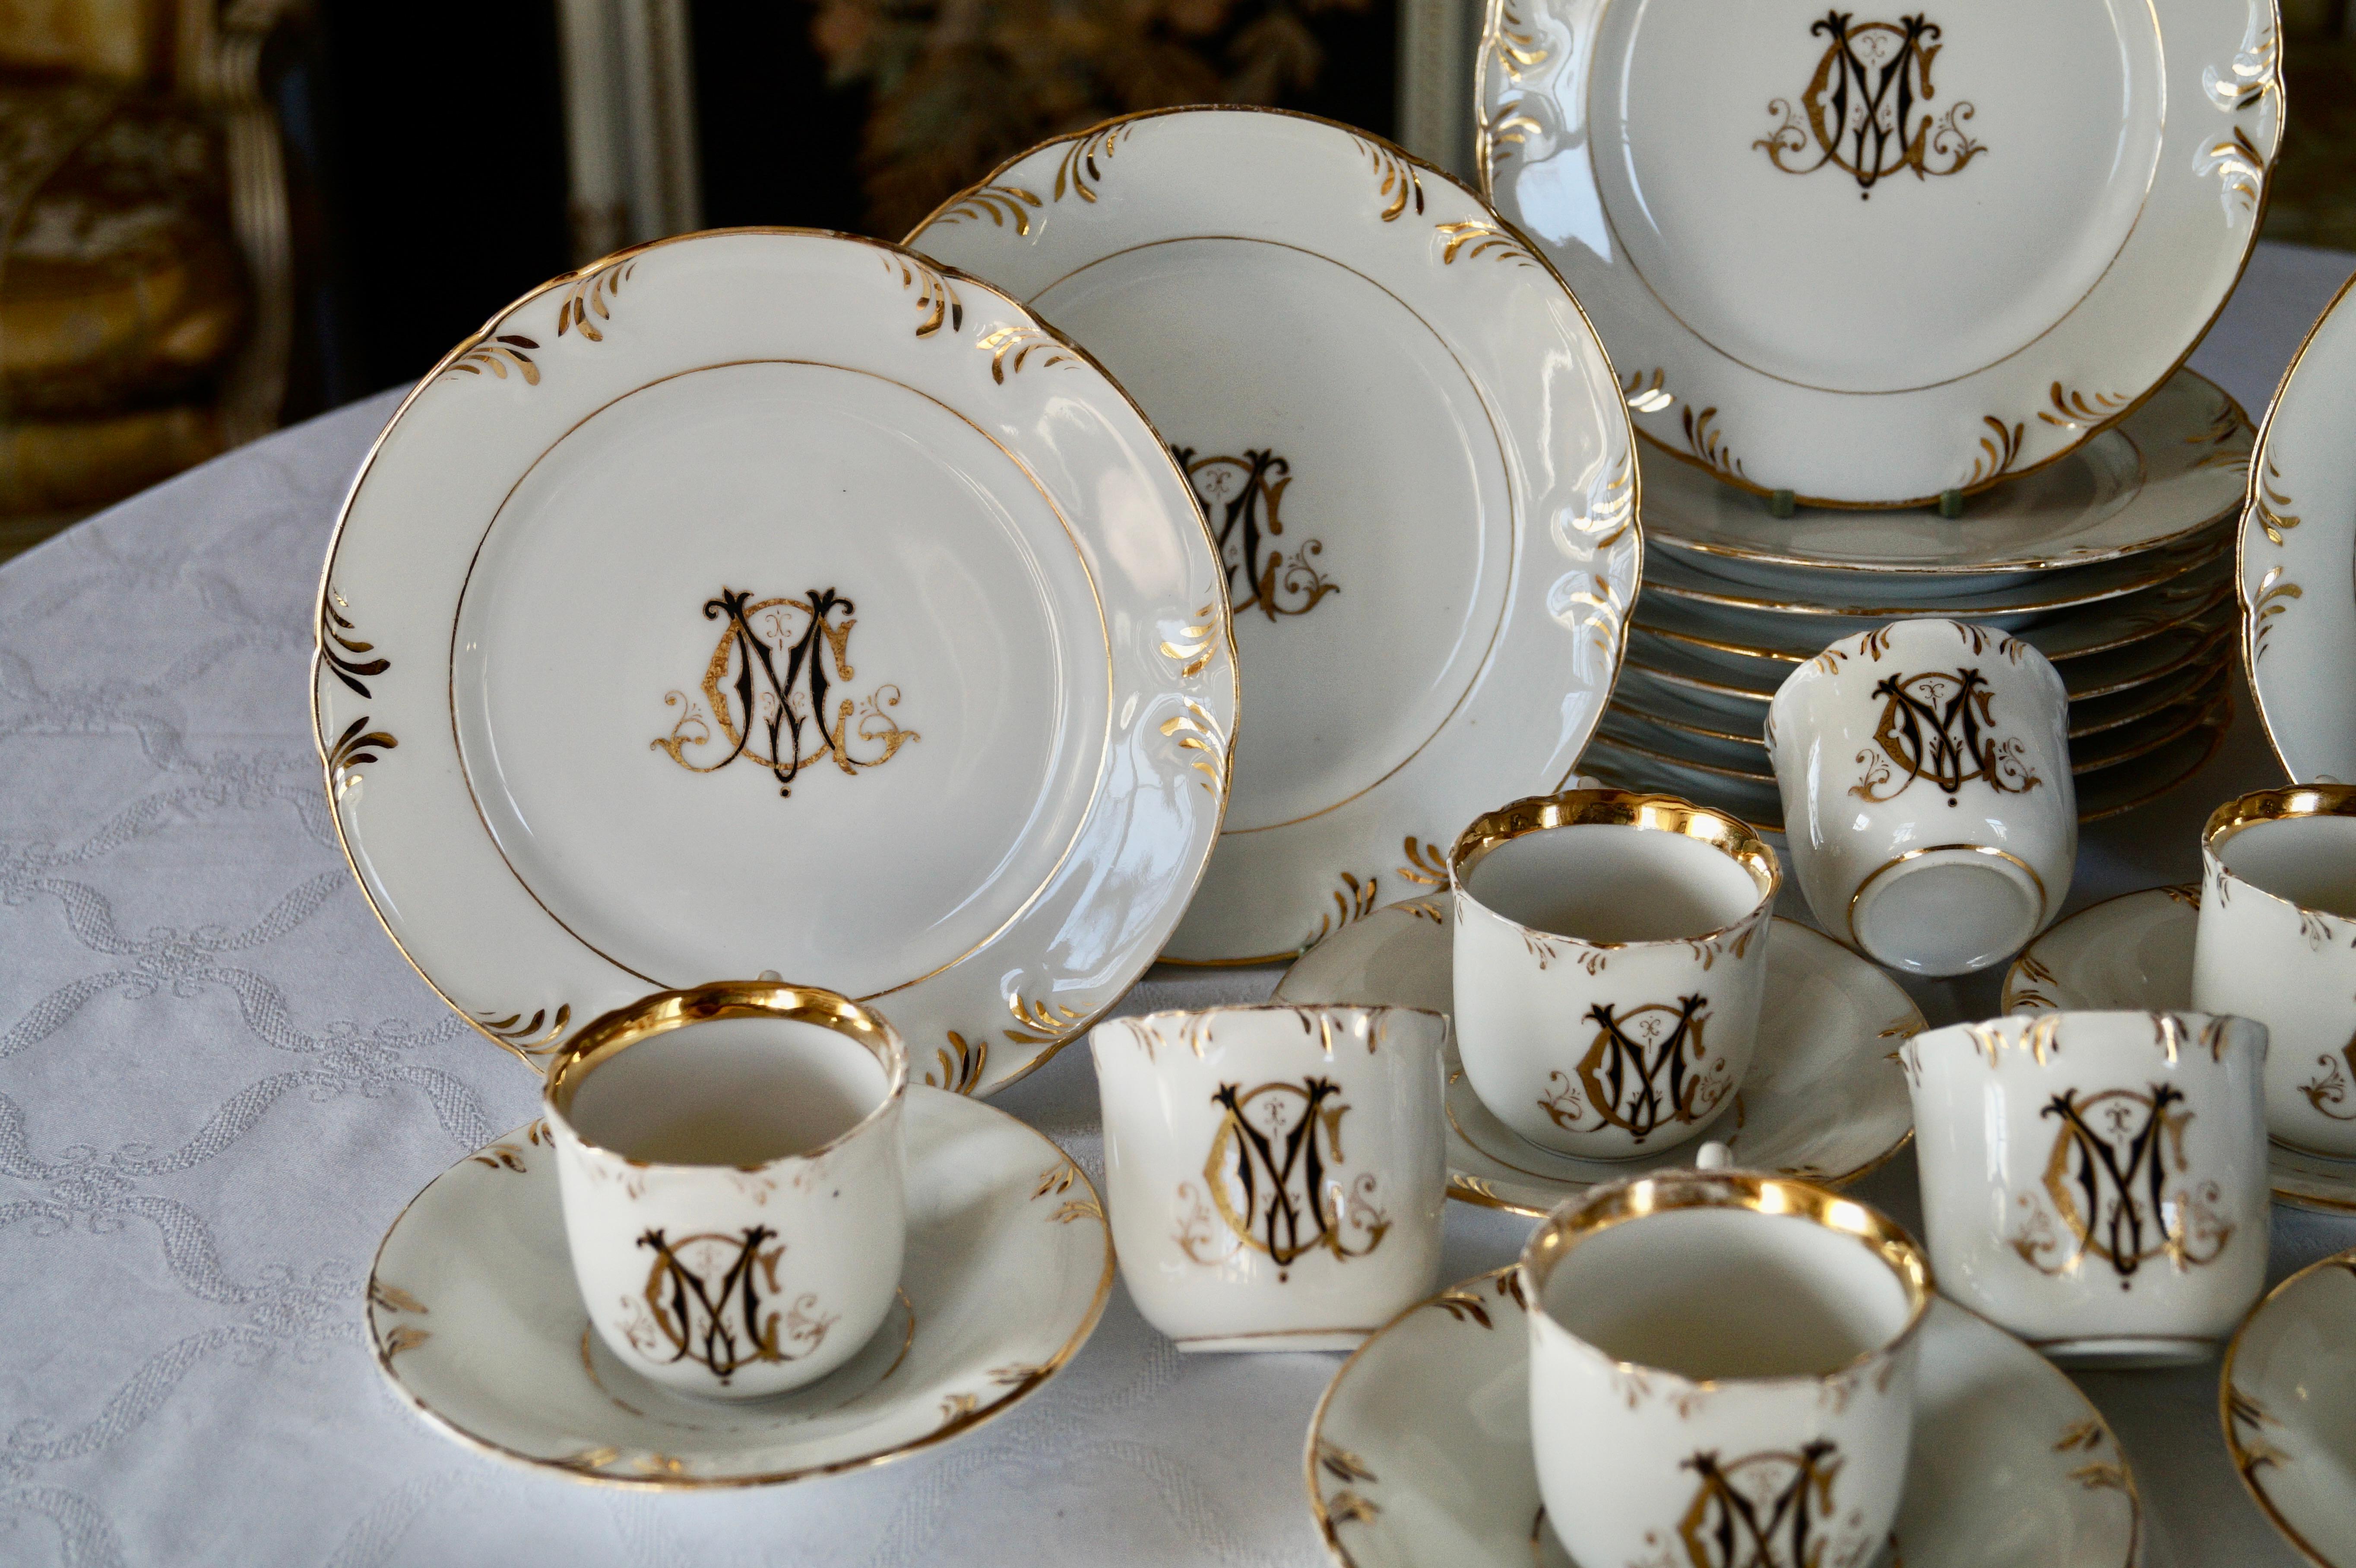 Bel ensemble d'assiettes à gâteaux en porcelaine de Paris avec 6 tasses et soucoupes et 4 tasses sans soucoupes.

Les plaques sont décorées d'une bordure d'or de style rococo et portent le Monogramme 